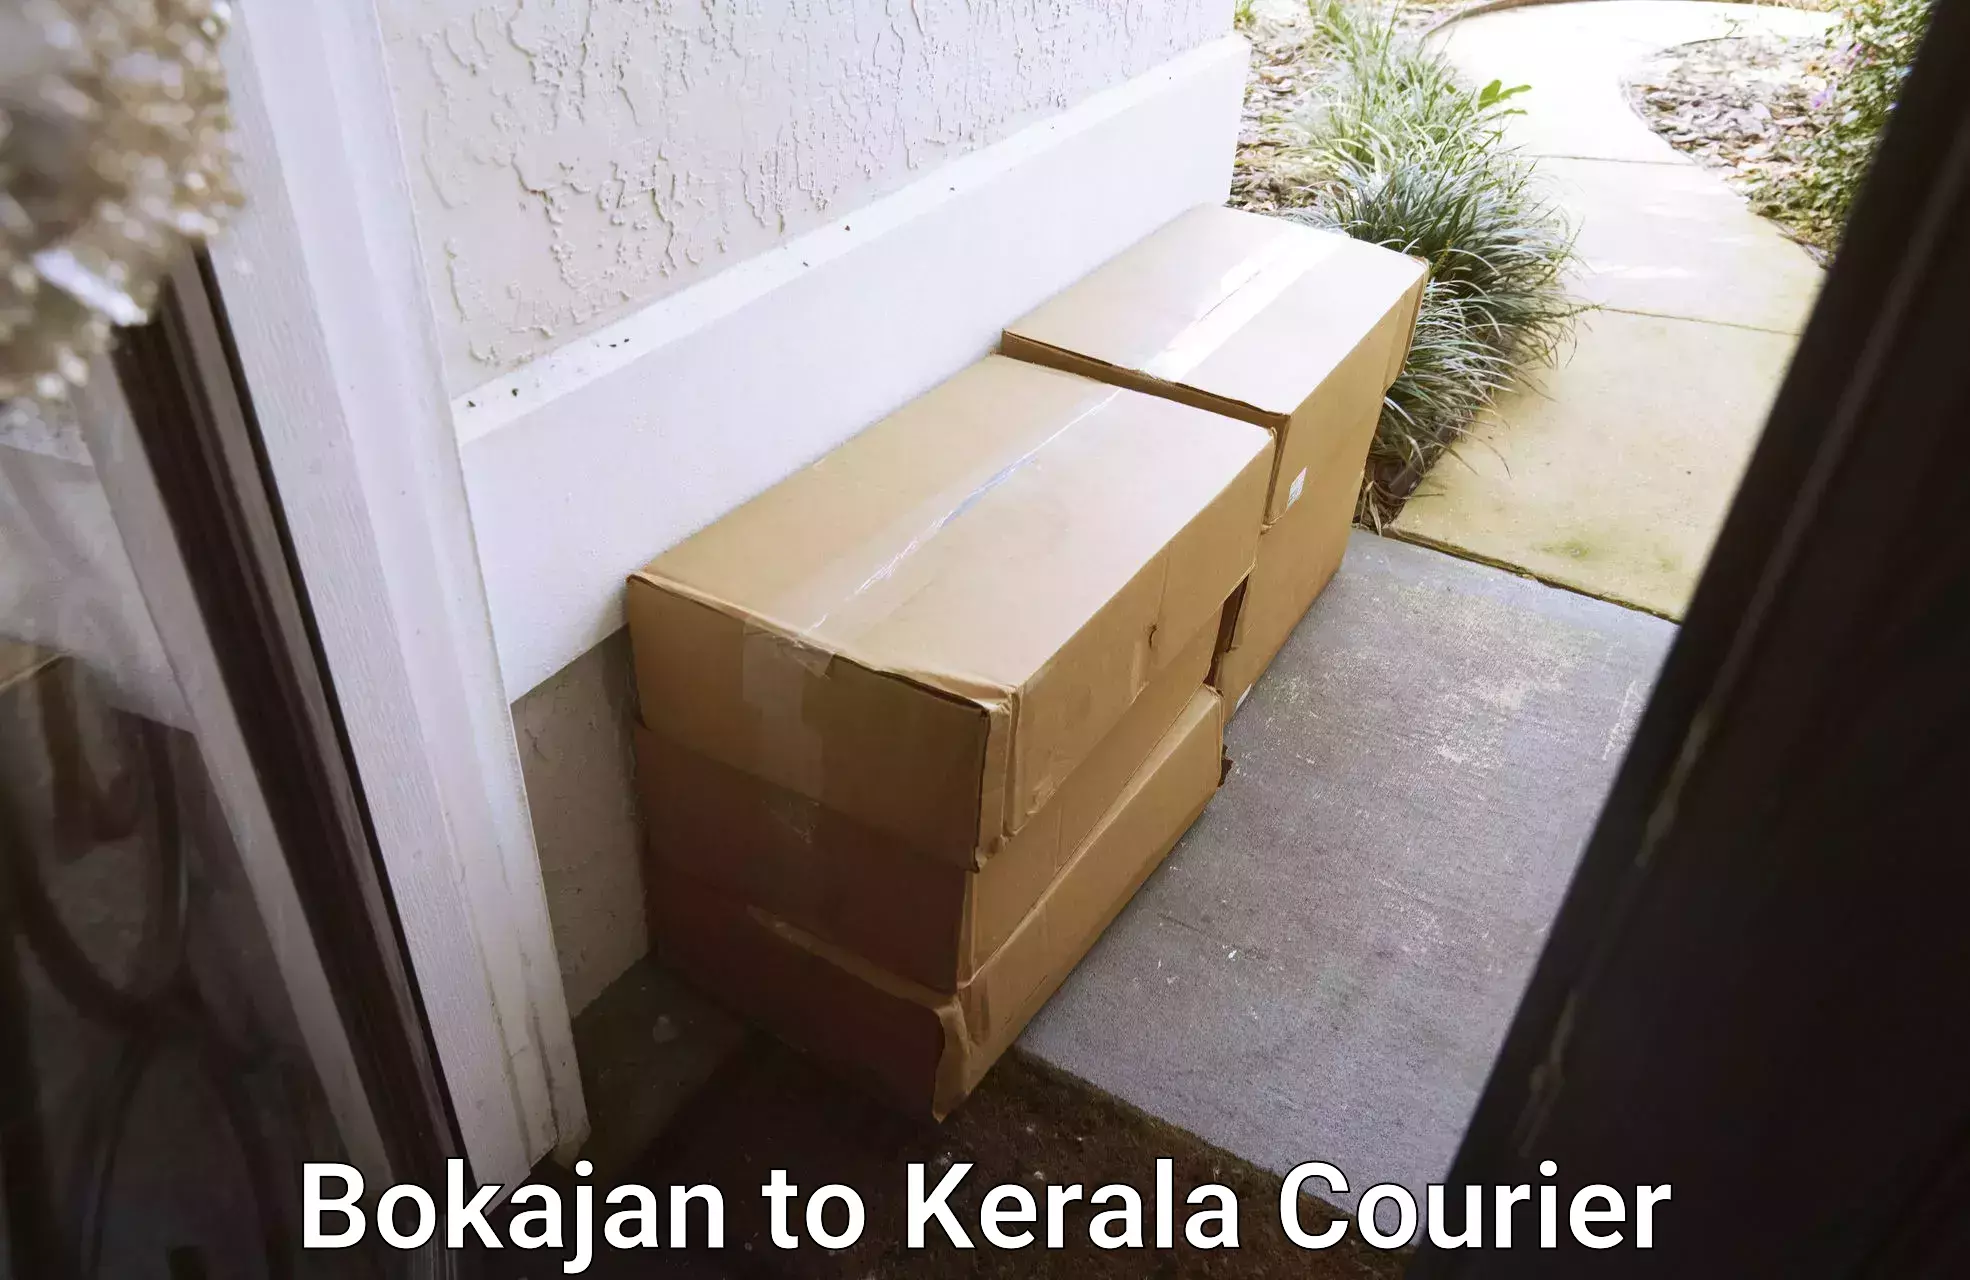 High-capacity parcel service in Bokajan to Kottarakkara